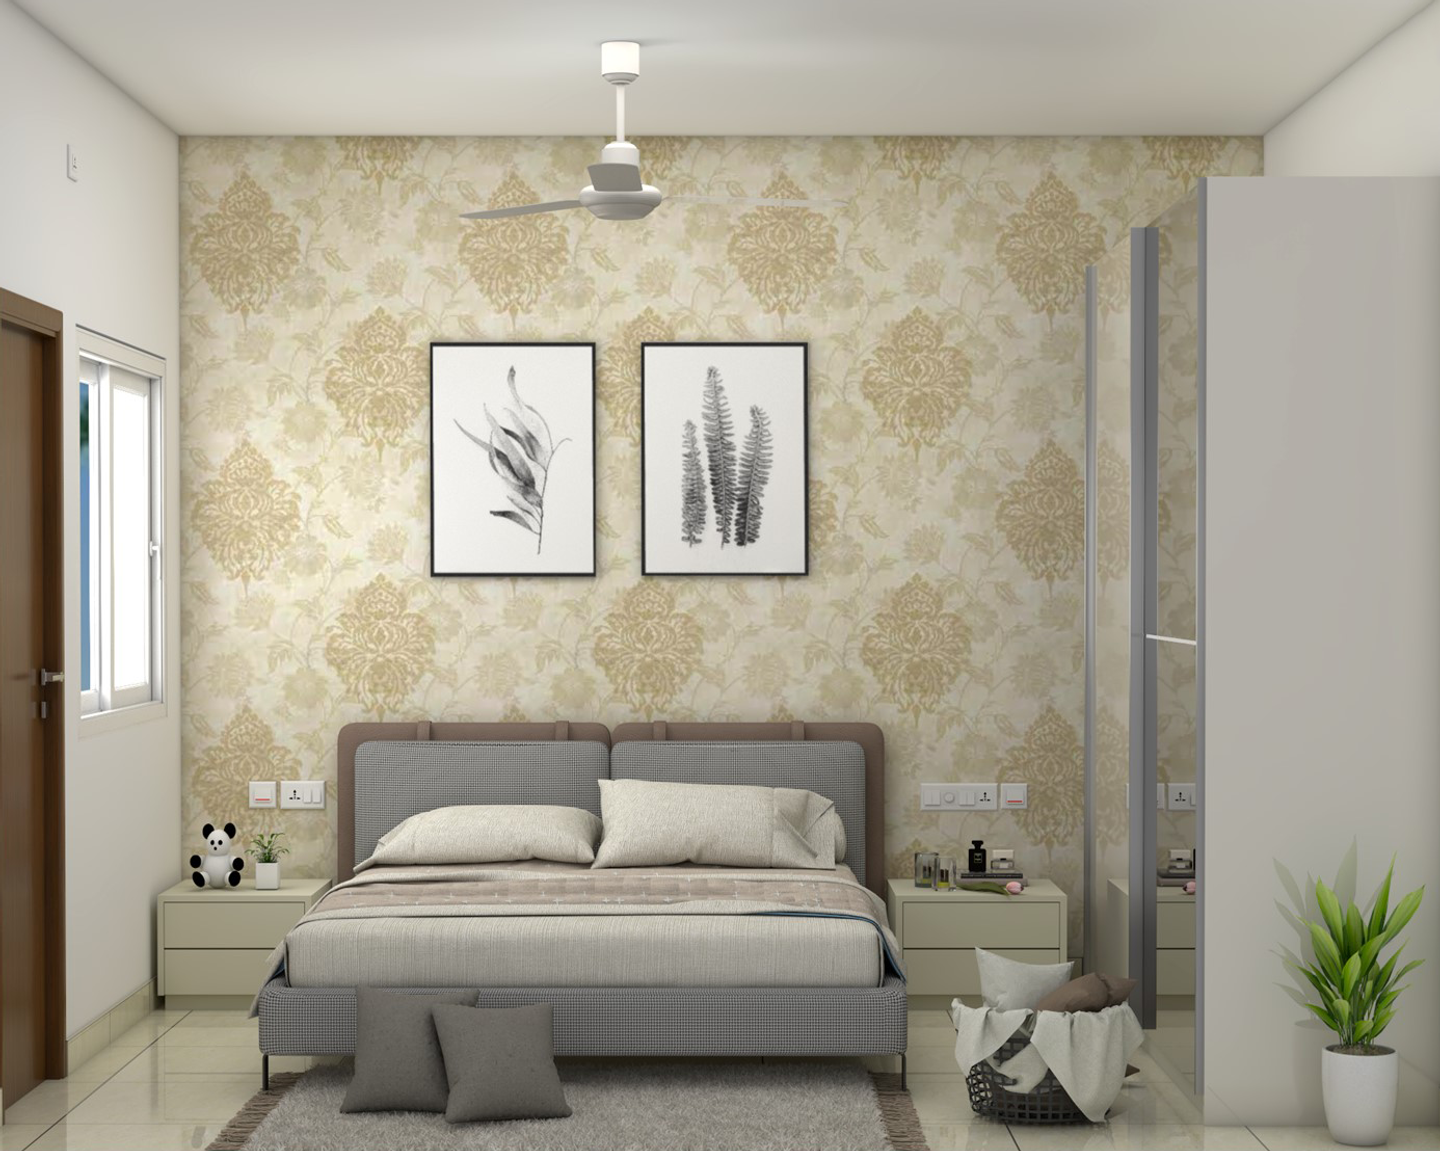 Modern Master Bedroom Design Idea With Sliding Door Wardrobe